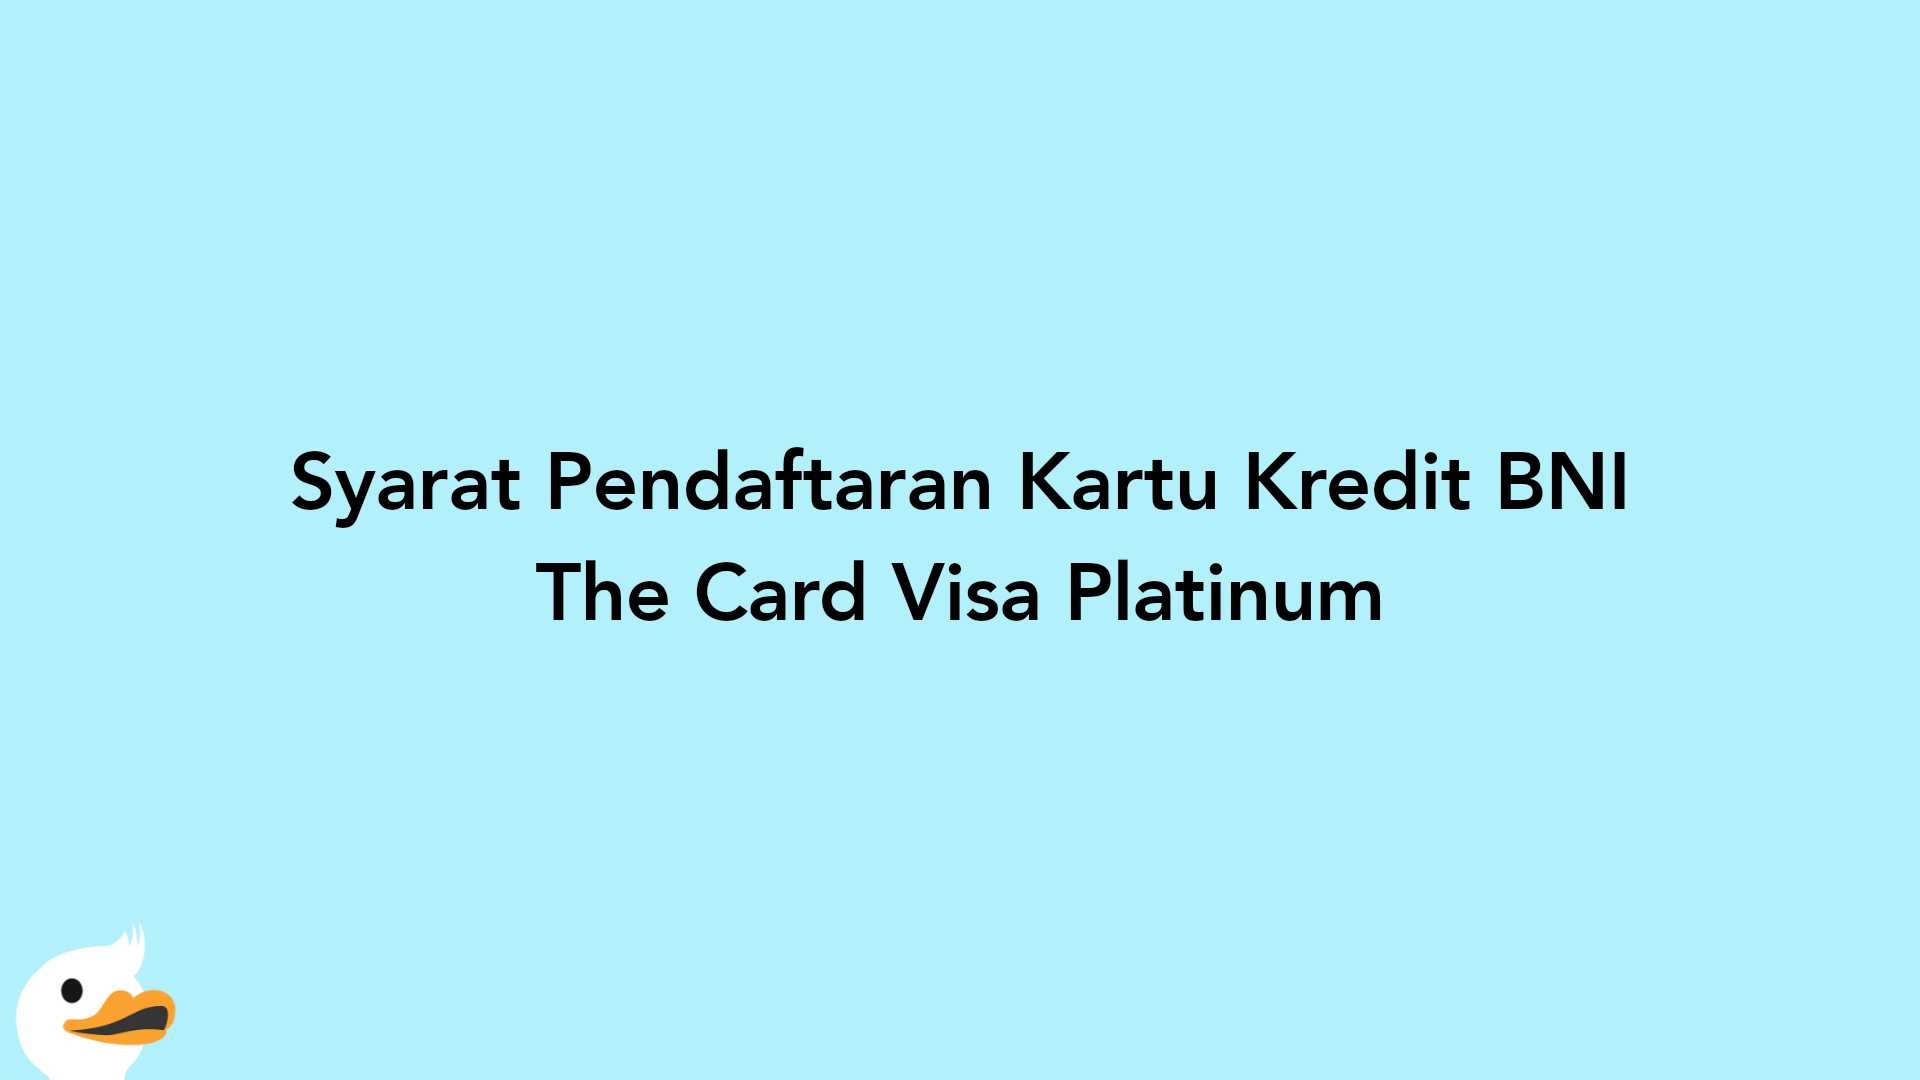 Syarat Pendaftaran Kartu Kredit BNI The Card Visa Platinum